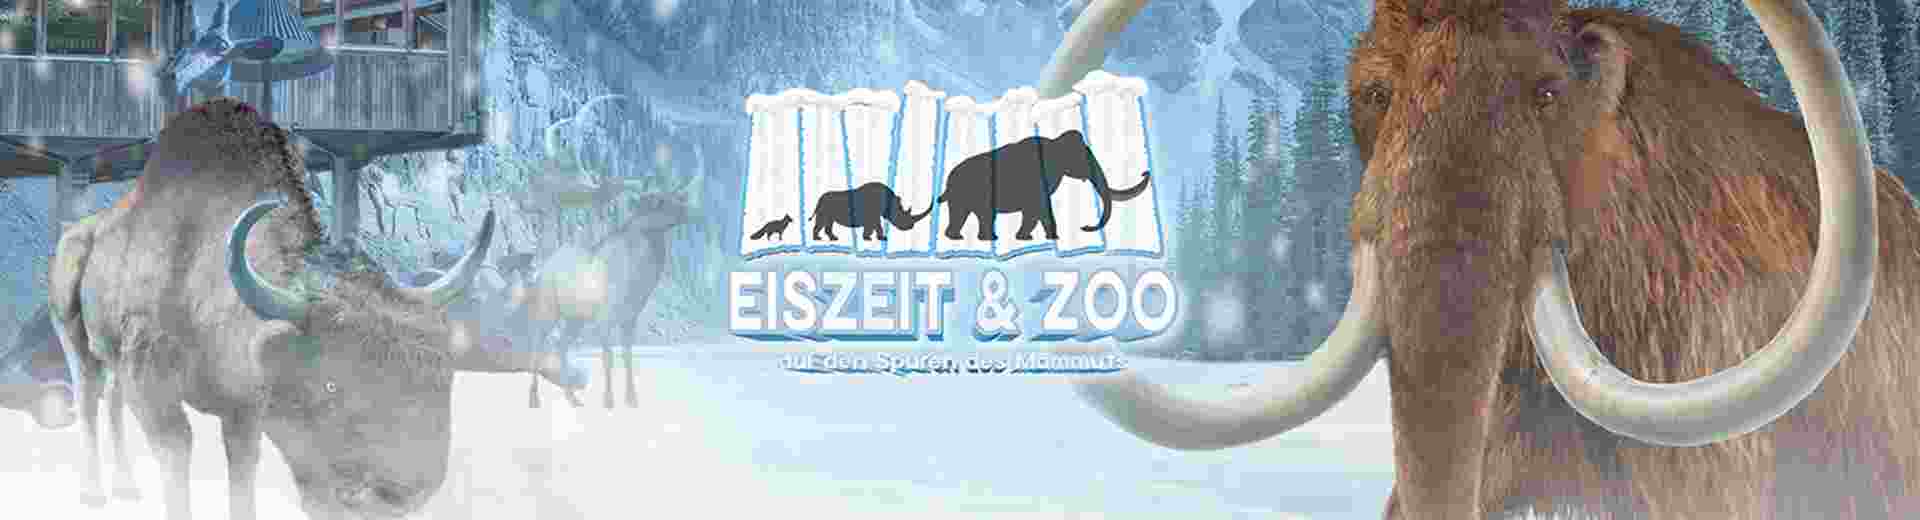 Eiszeit & Zoo Auf den Spuren des Mammuts